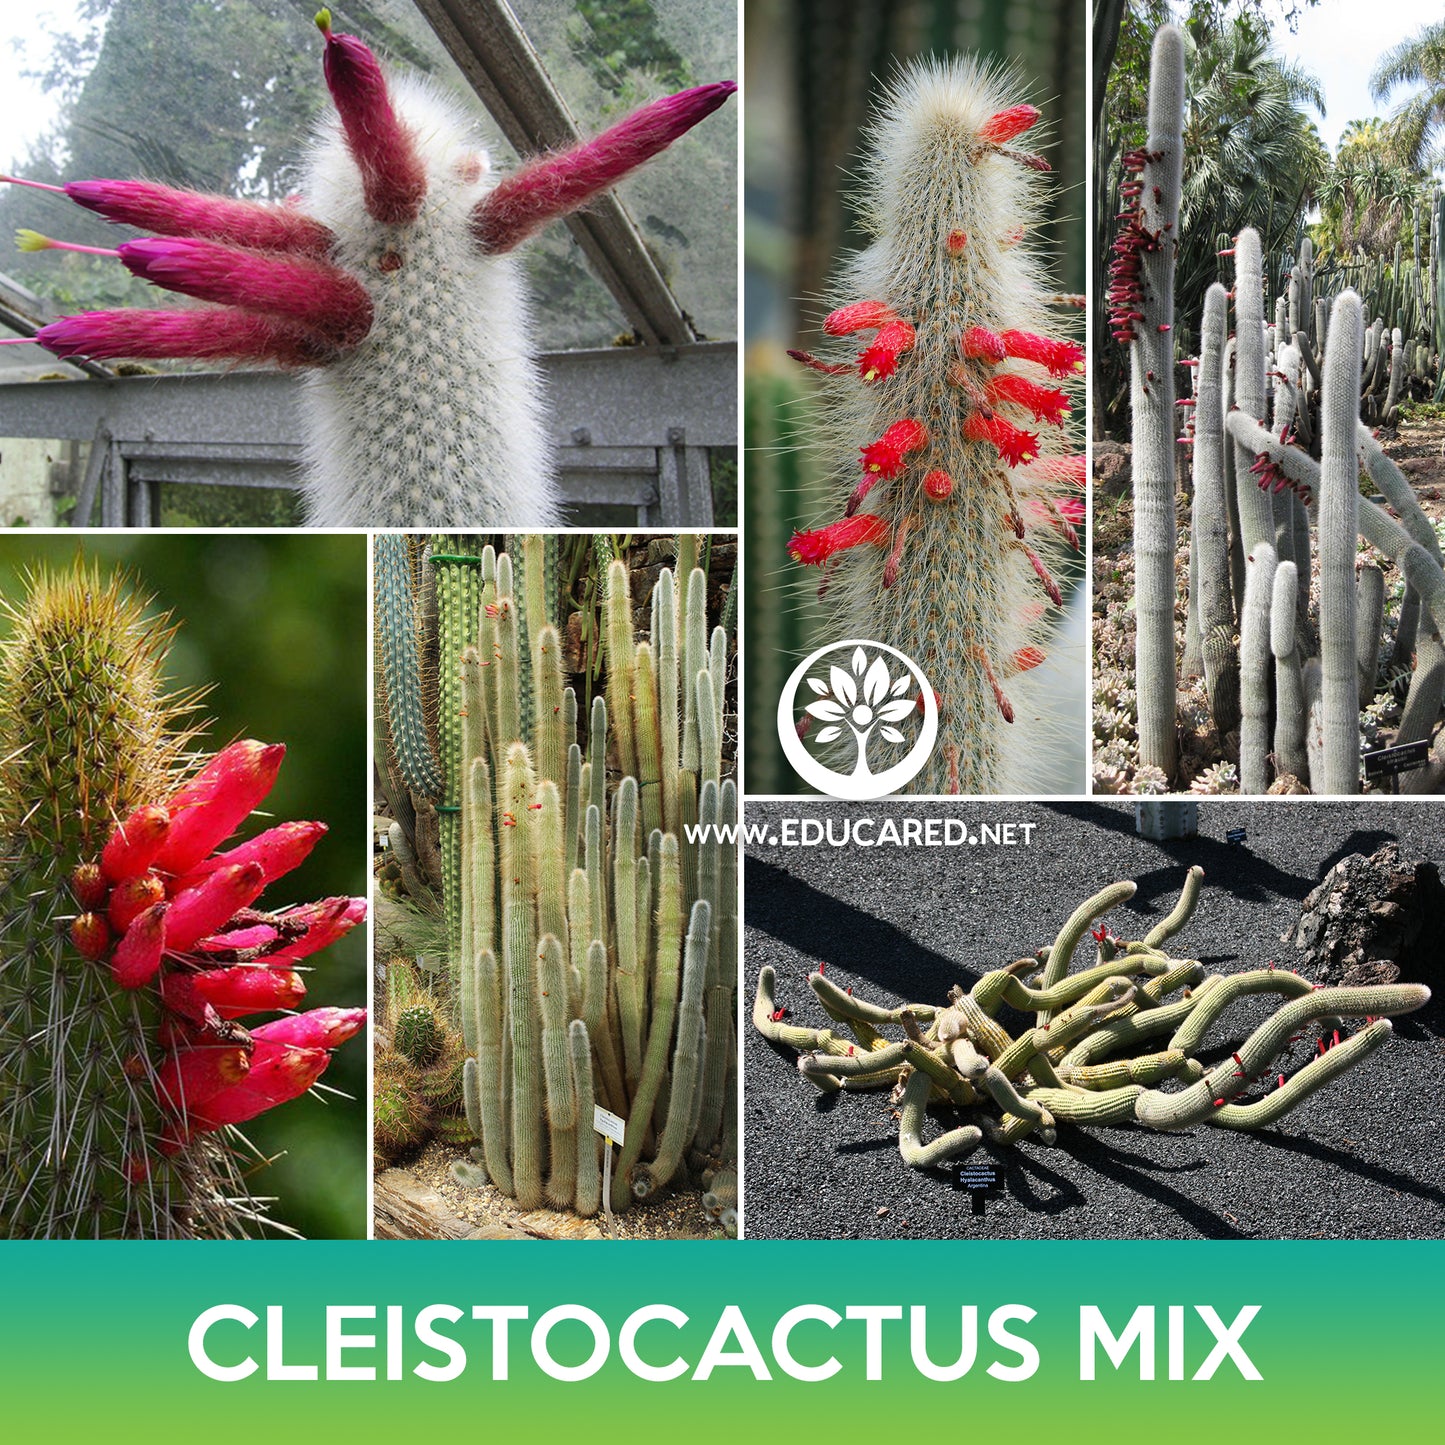 Cleistocactus Mix Seeds